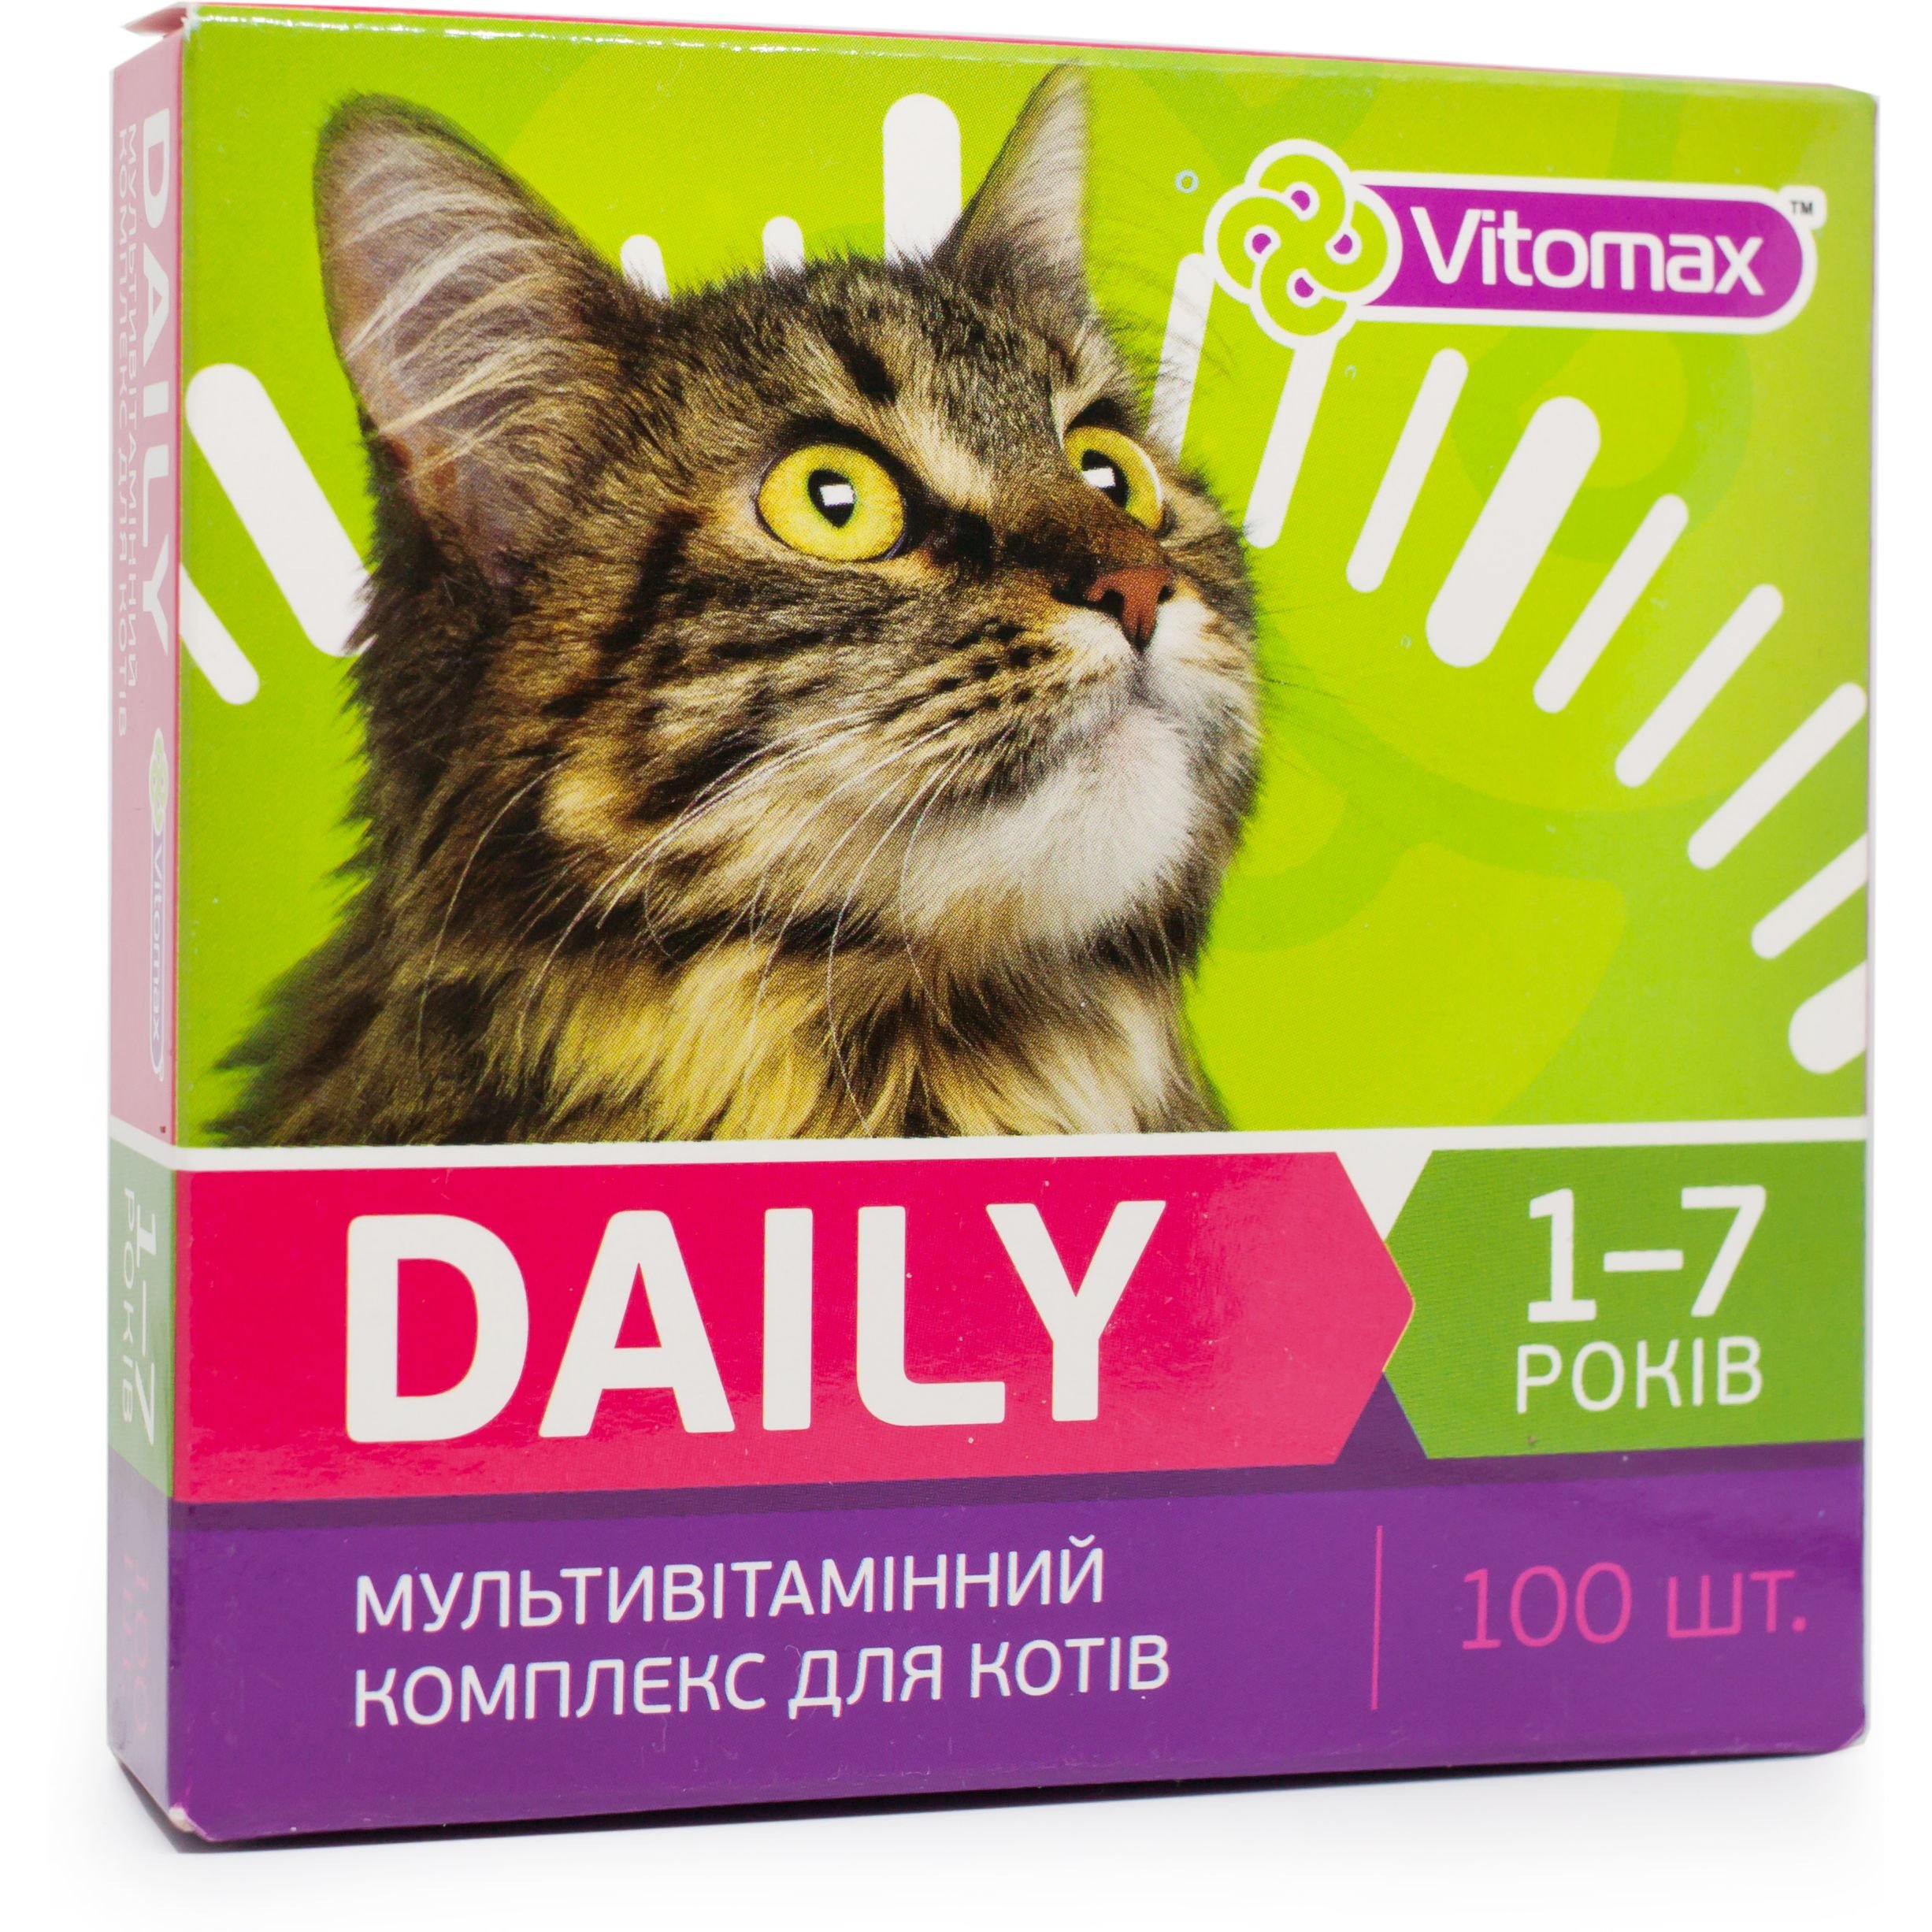 Мультивітамінний комплекс Vitomax Daily для котів 1-7 років, 100 таблеток - фото 1